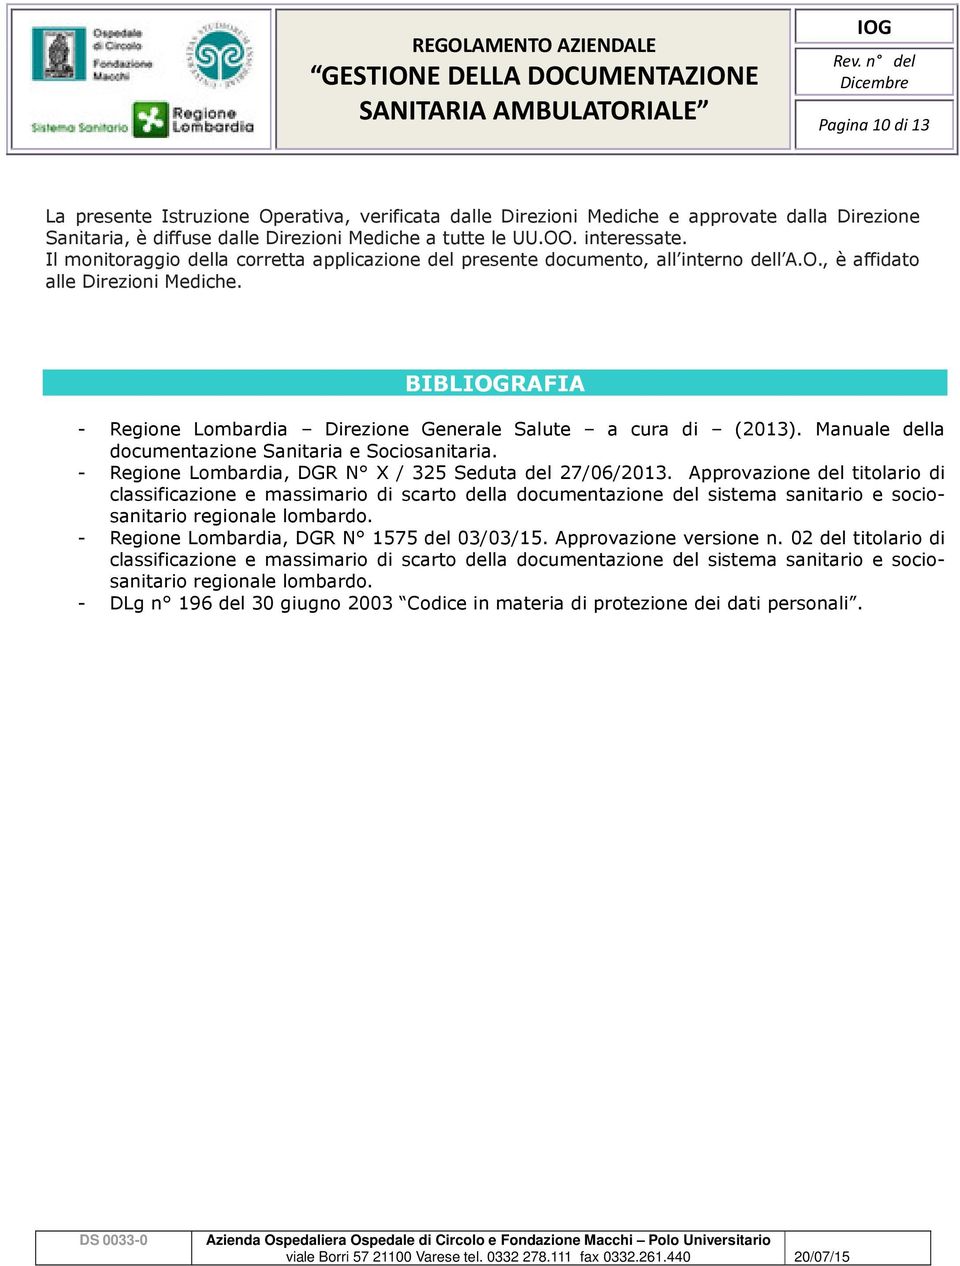 Manuale della documentazione Sanitaria e Sociosanitaria. - Regione Lombardia, DGR N X / 325 Seduta del 27/06/2013.